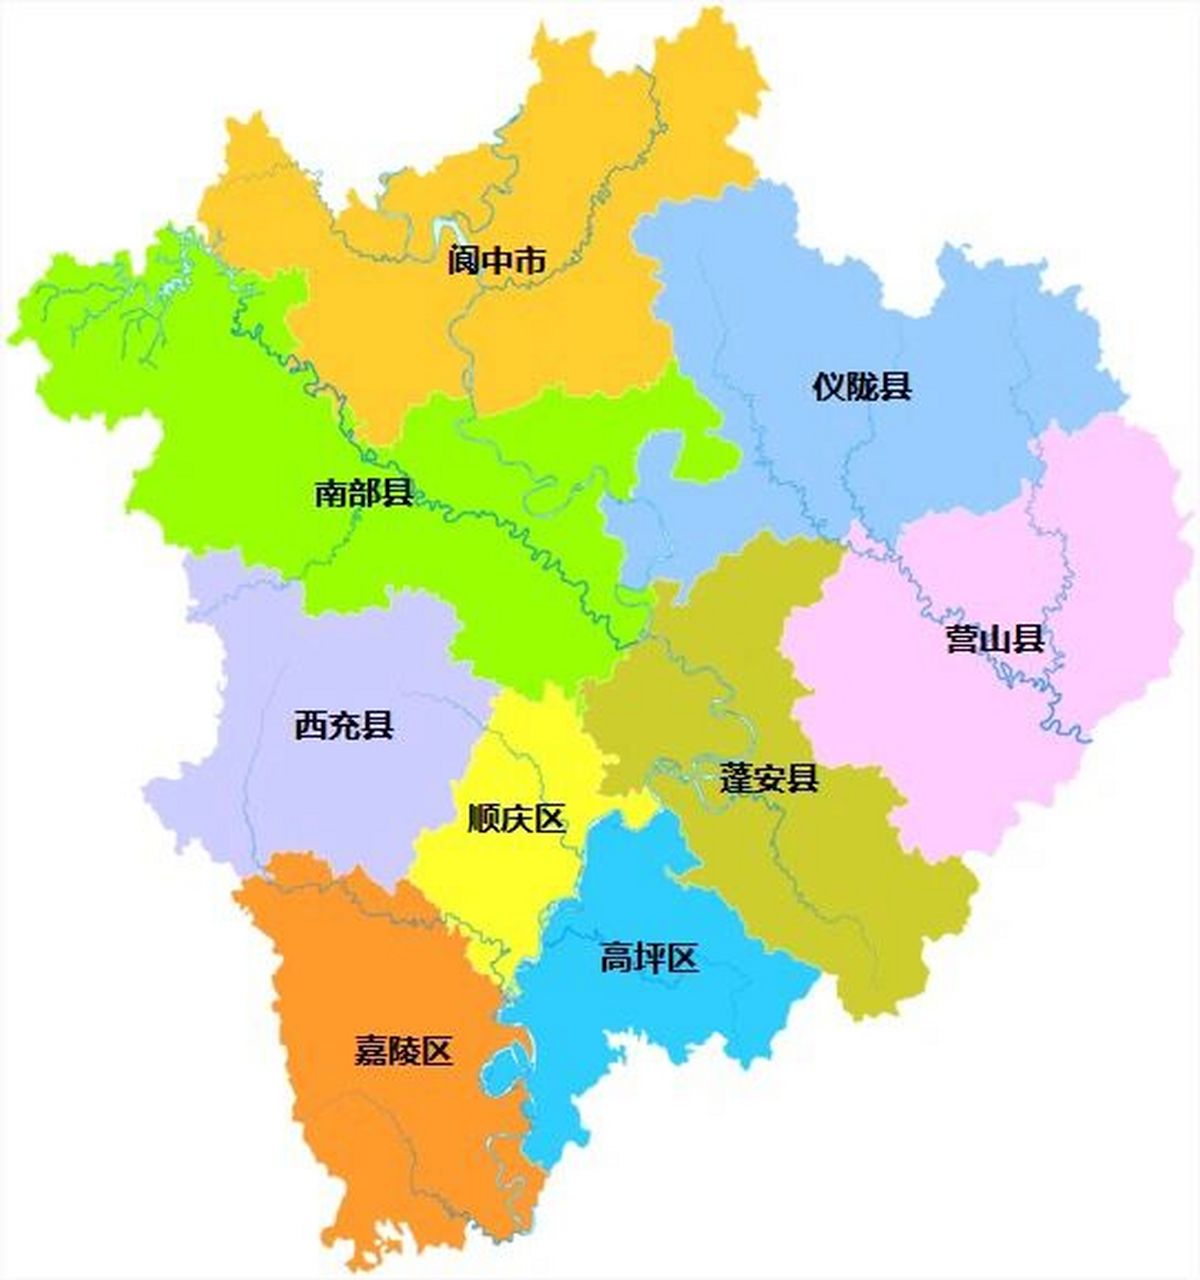 南充全市划分为 3个区:顺庆区,嘉陵区,高坪区; 5个县:南部县,仪陇